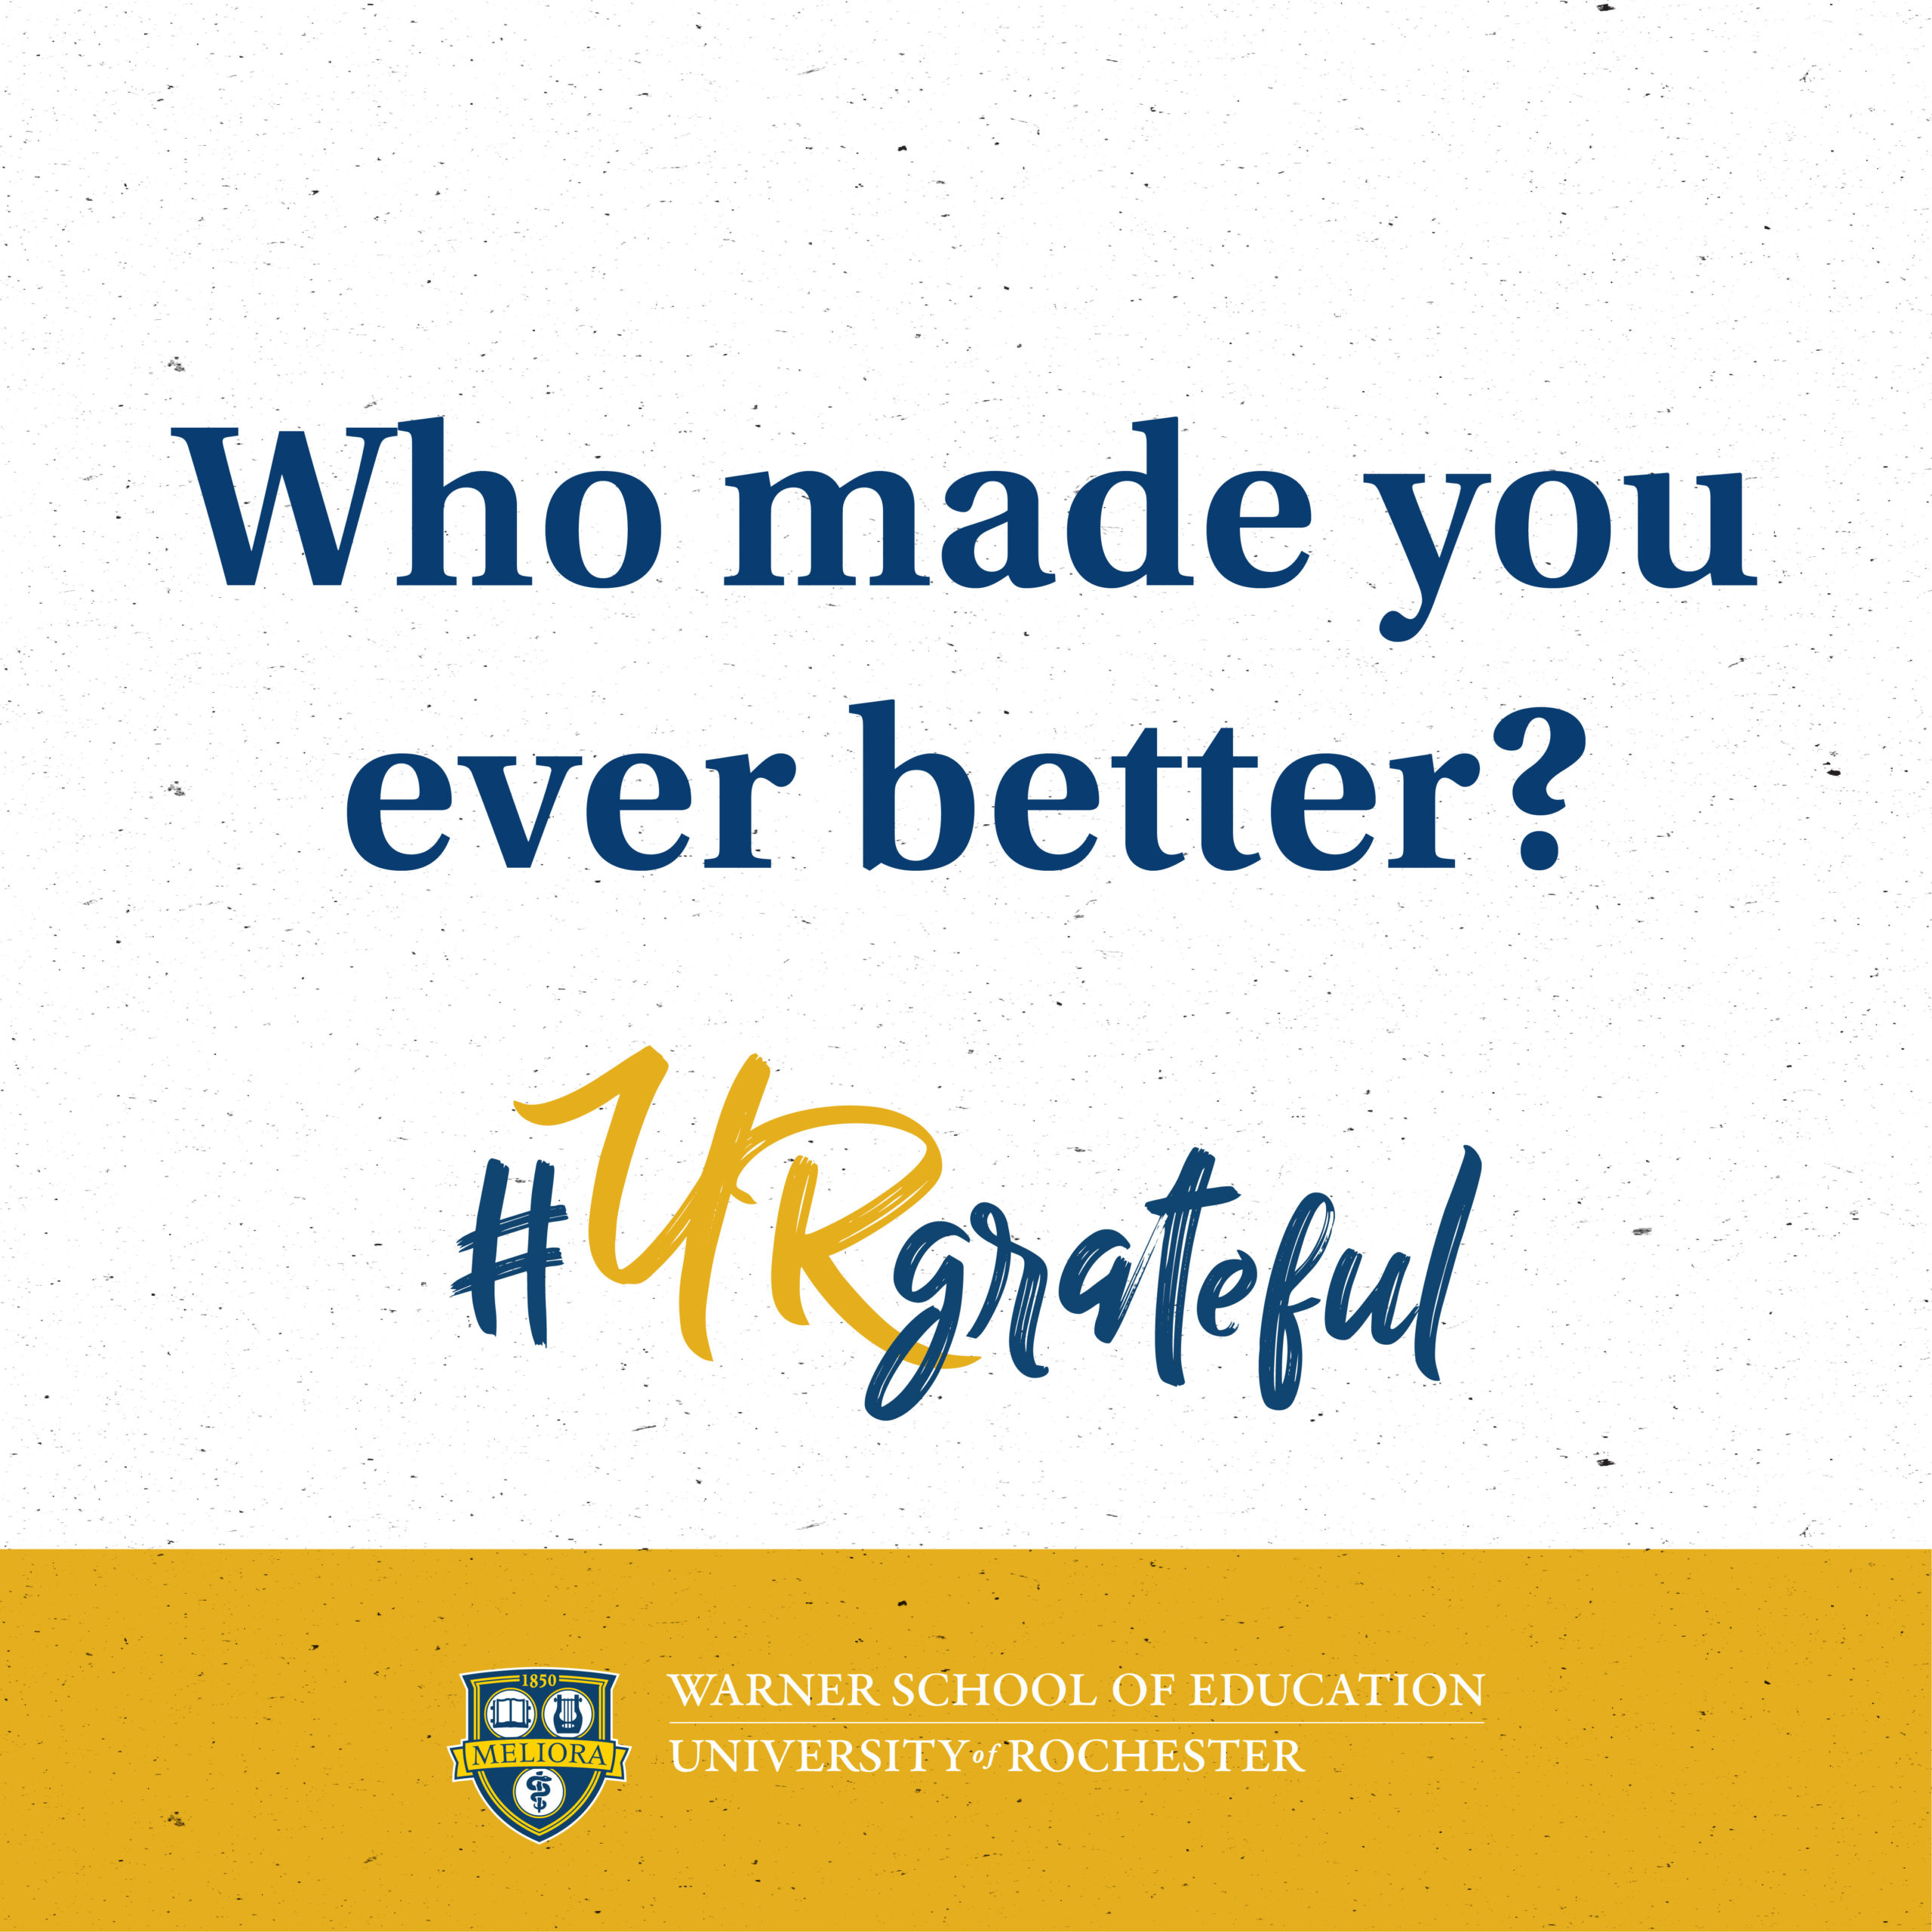 Who made you ever better? #URgrateful - Warner